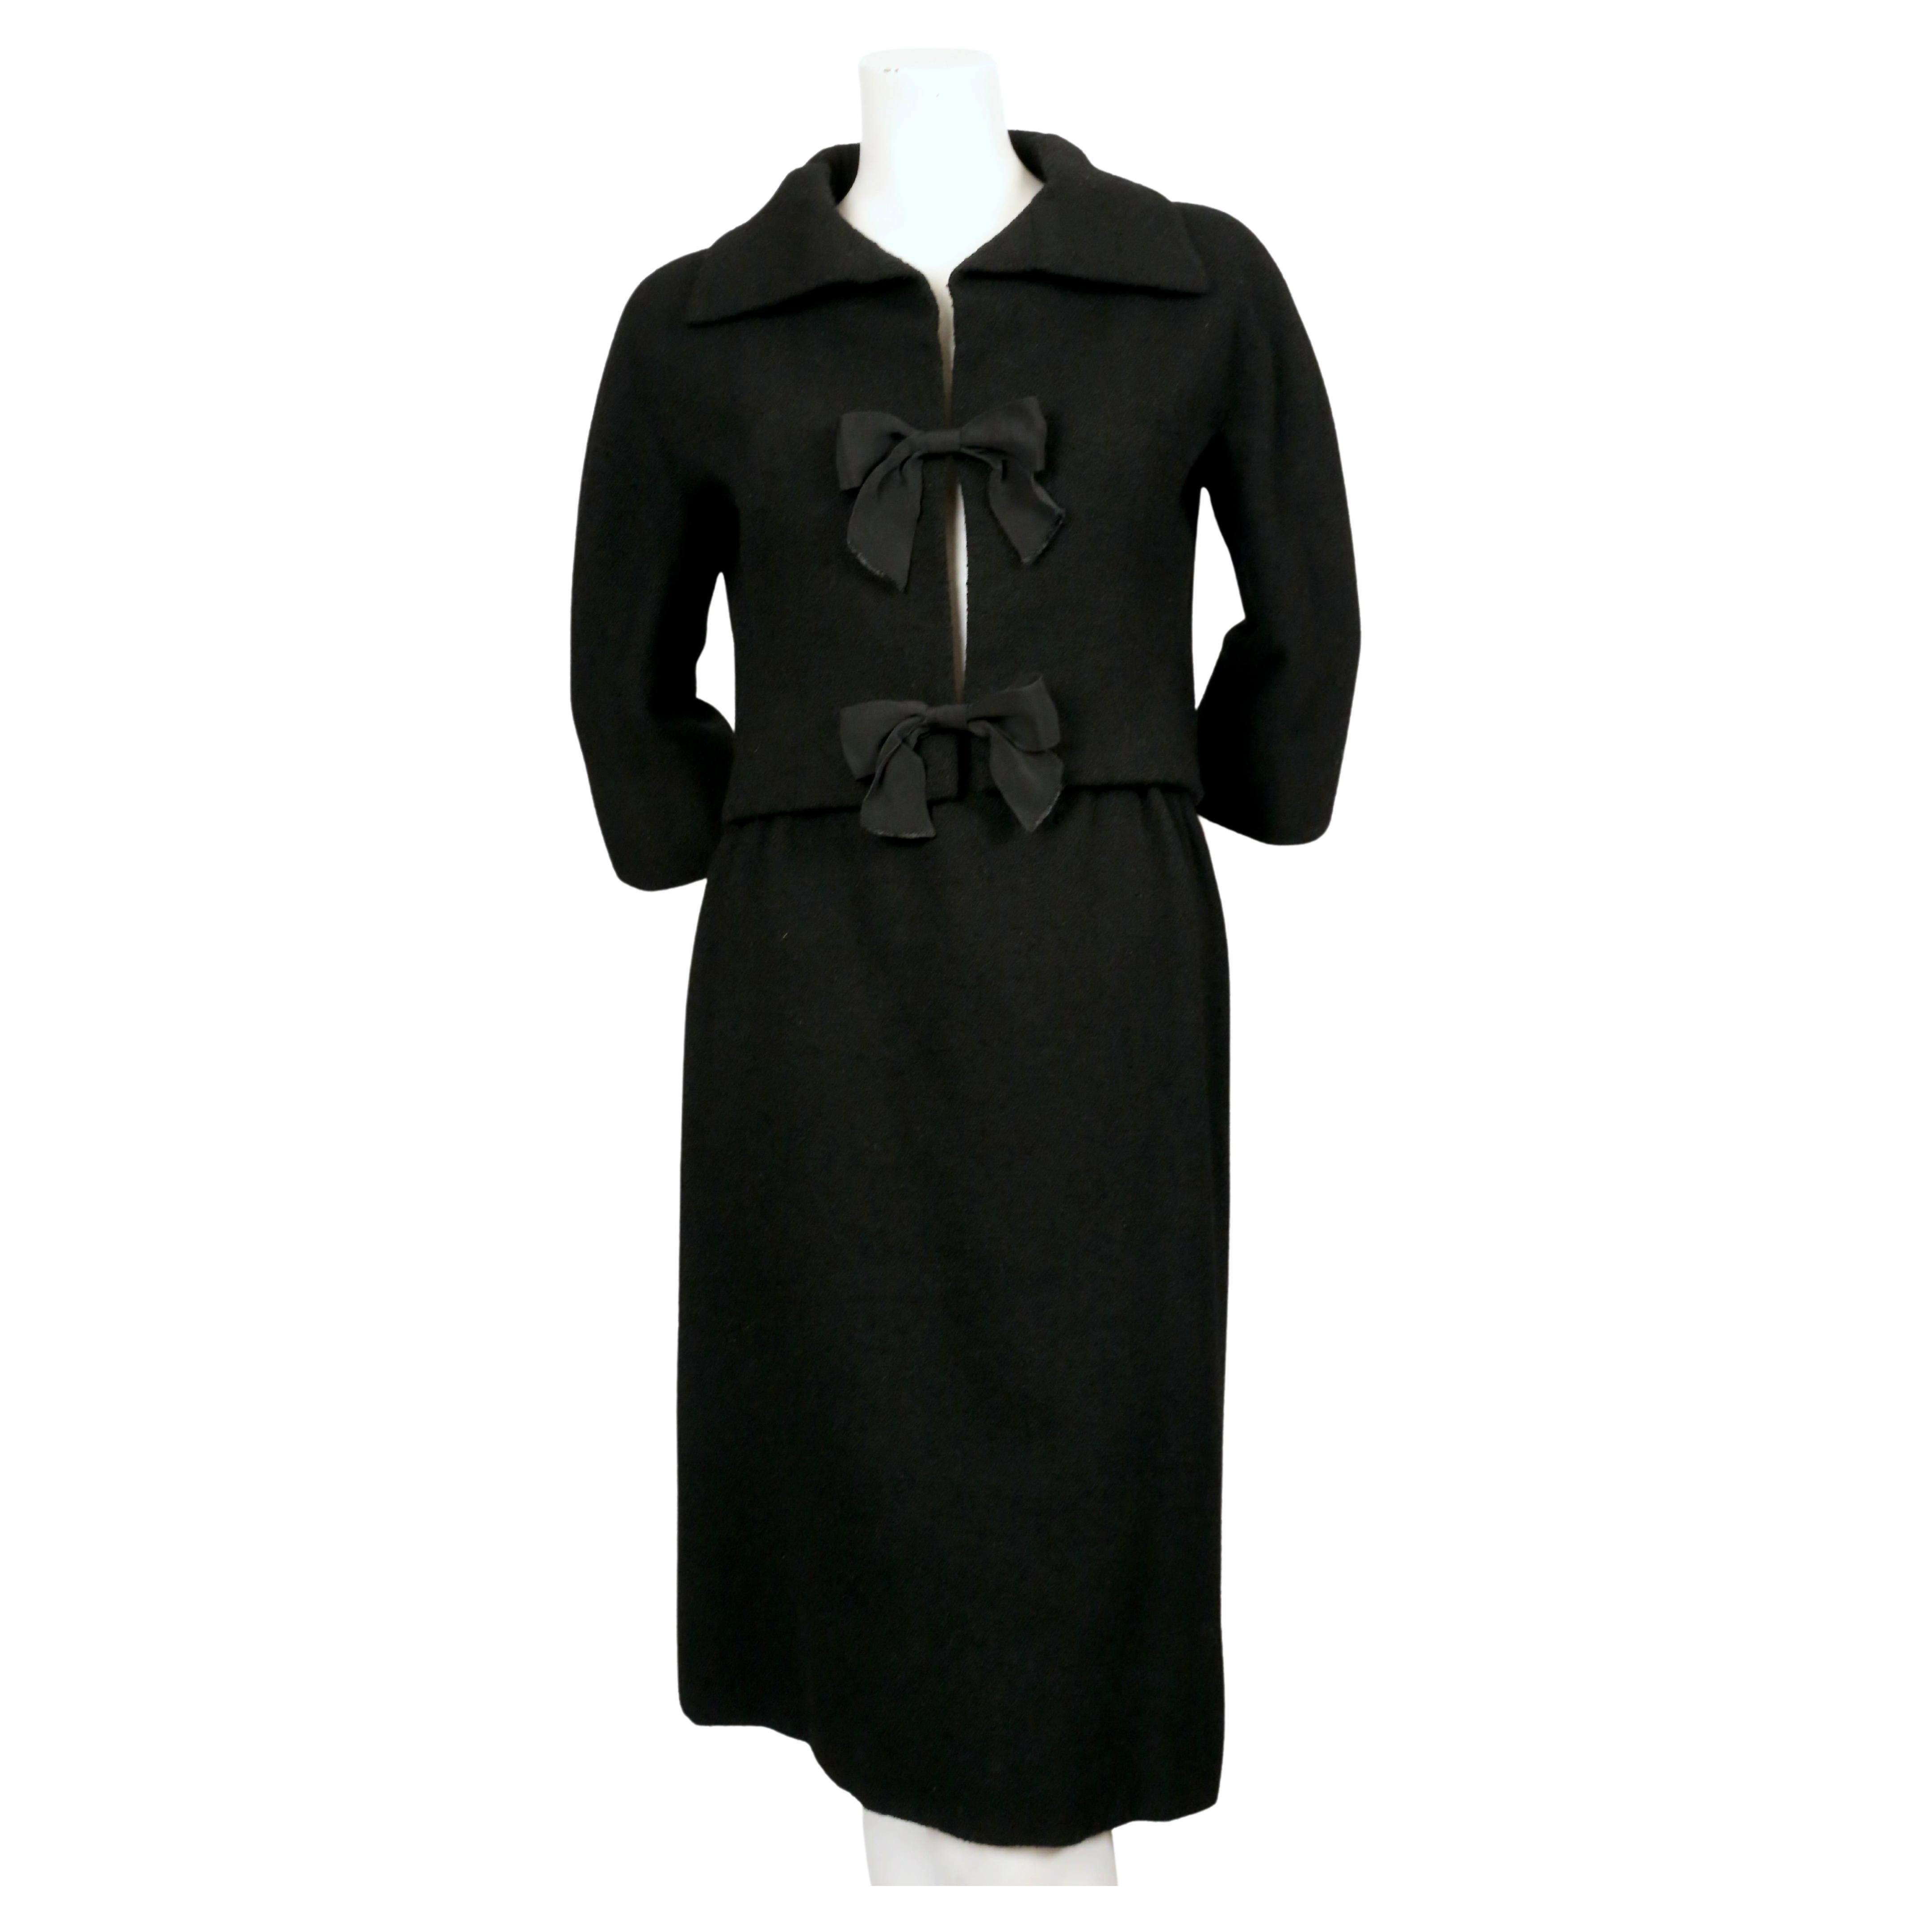 Très rare costume haute couture en laine bouclée noir de jais, conçu par Cristobal Balenciaga pour sa boutique Eisa, datant de l'automne 1958. La combinaison convient le mieux à une taille 0-4. Mesures approximatives de la veste : épaules le long du